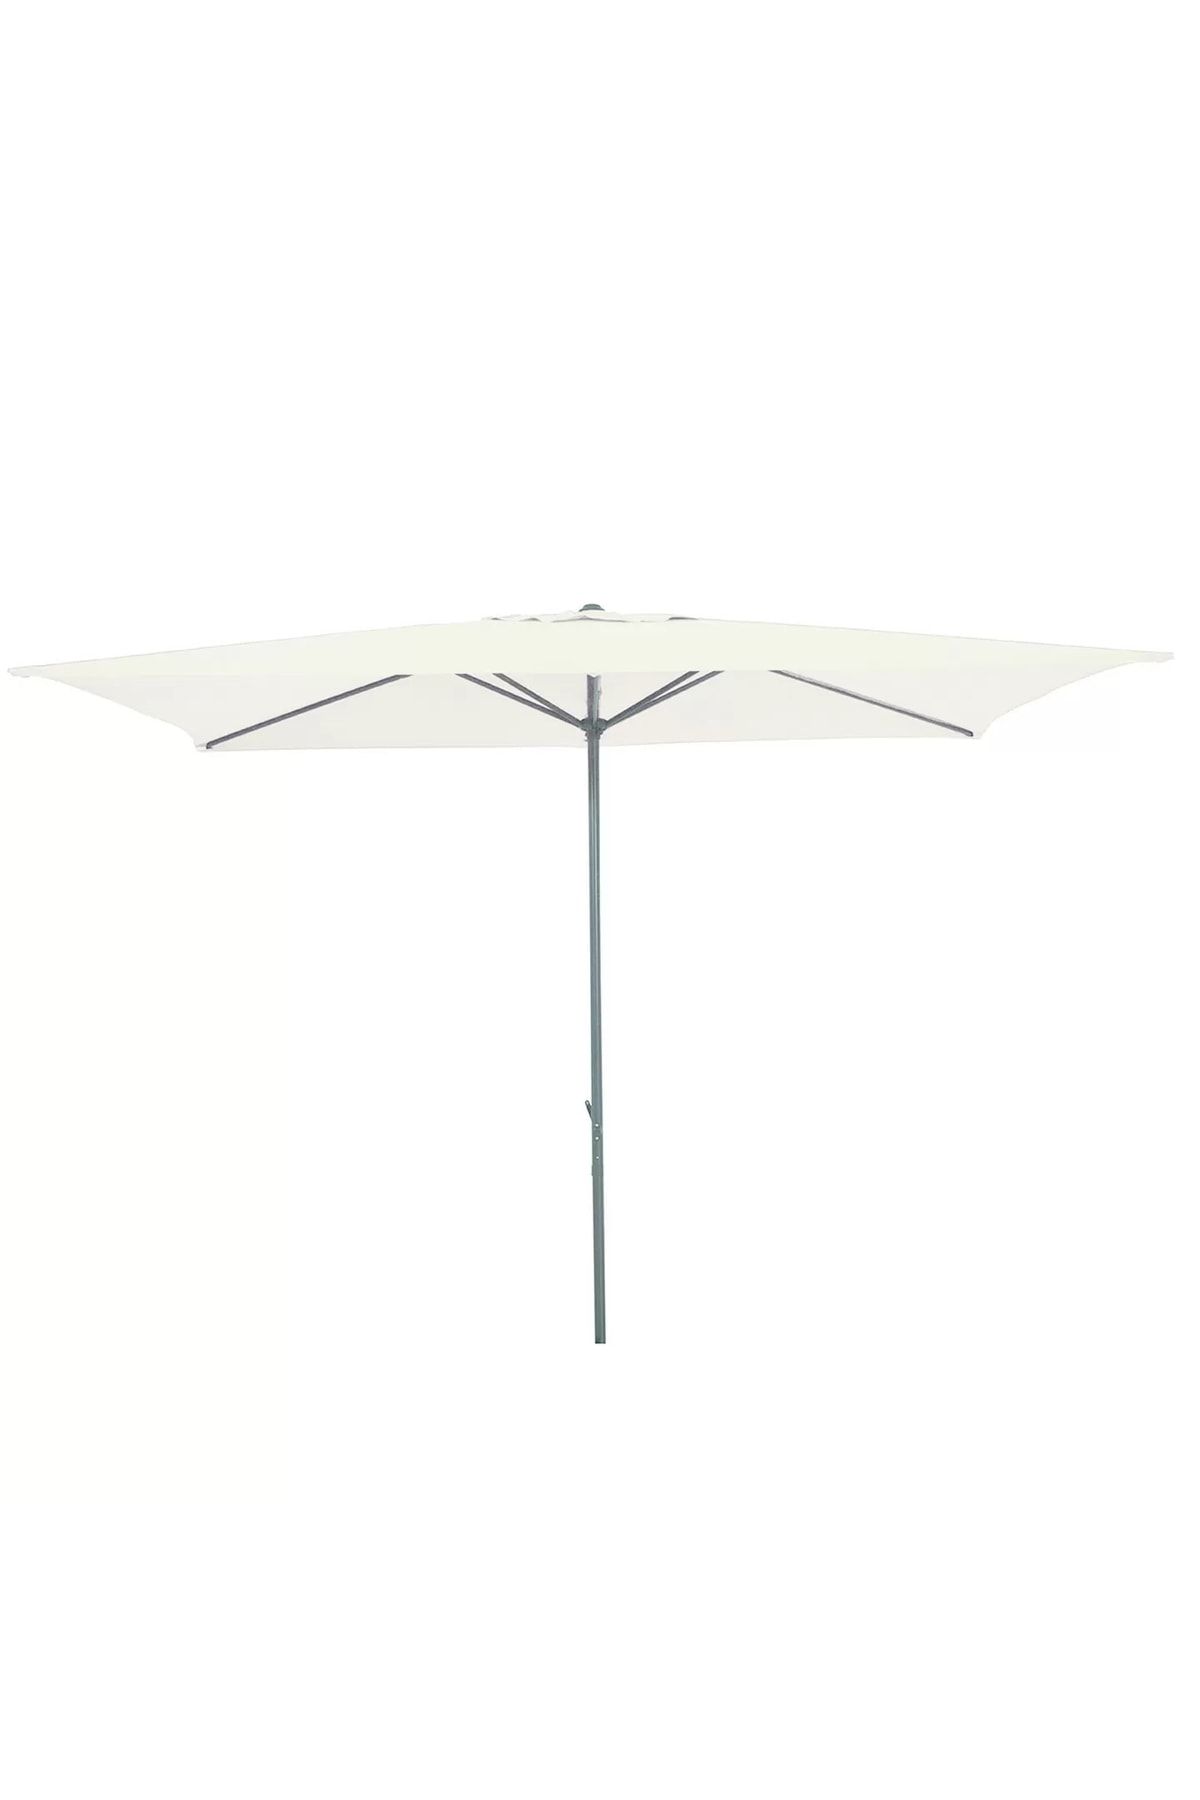 Sadece Nette Polyester Kumaş 200x300cm Bahçe Şemsiyesi, Balkon Şemsiyesi Ekru